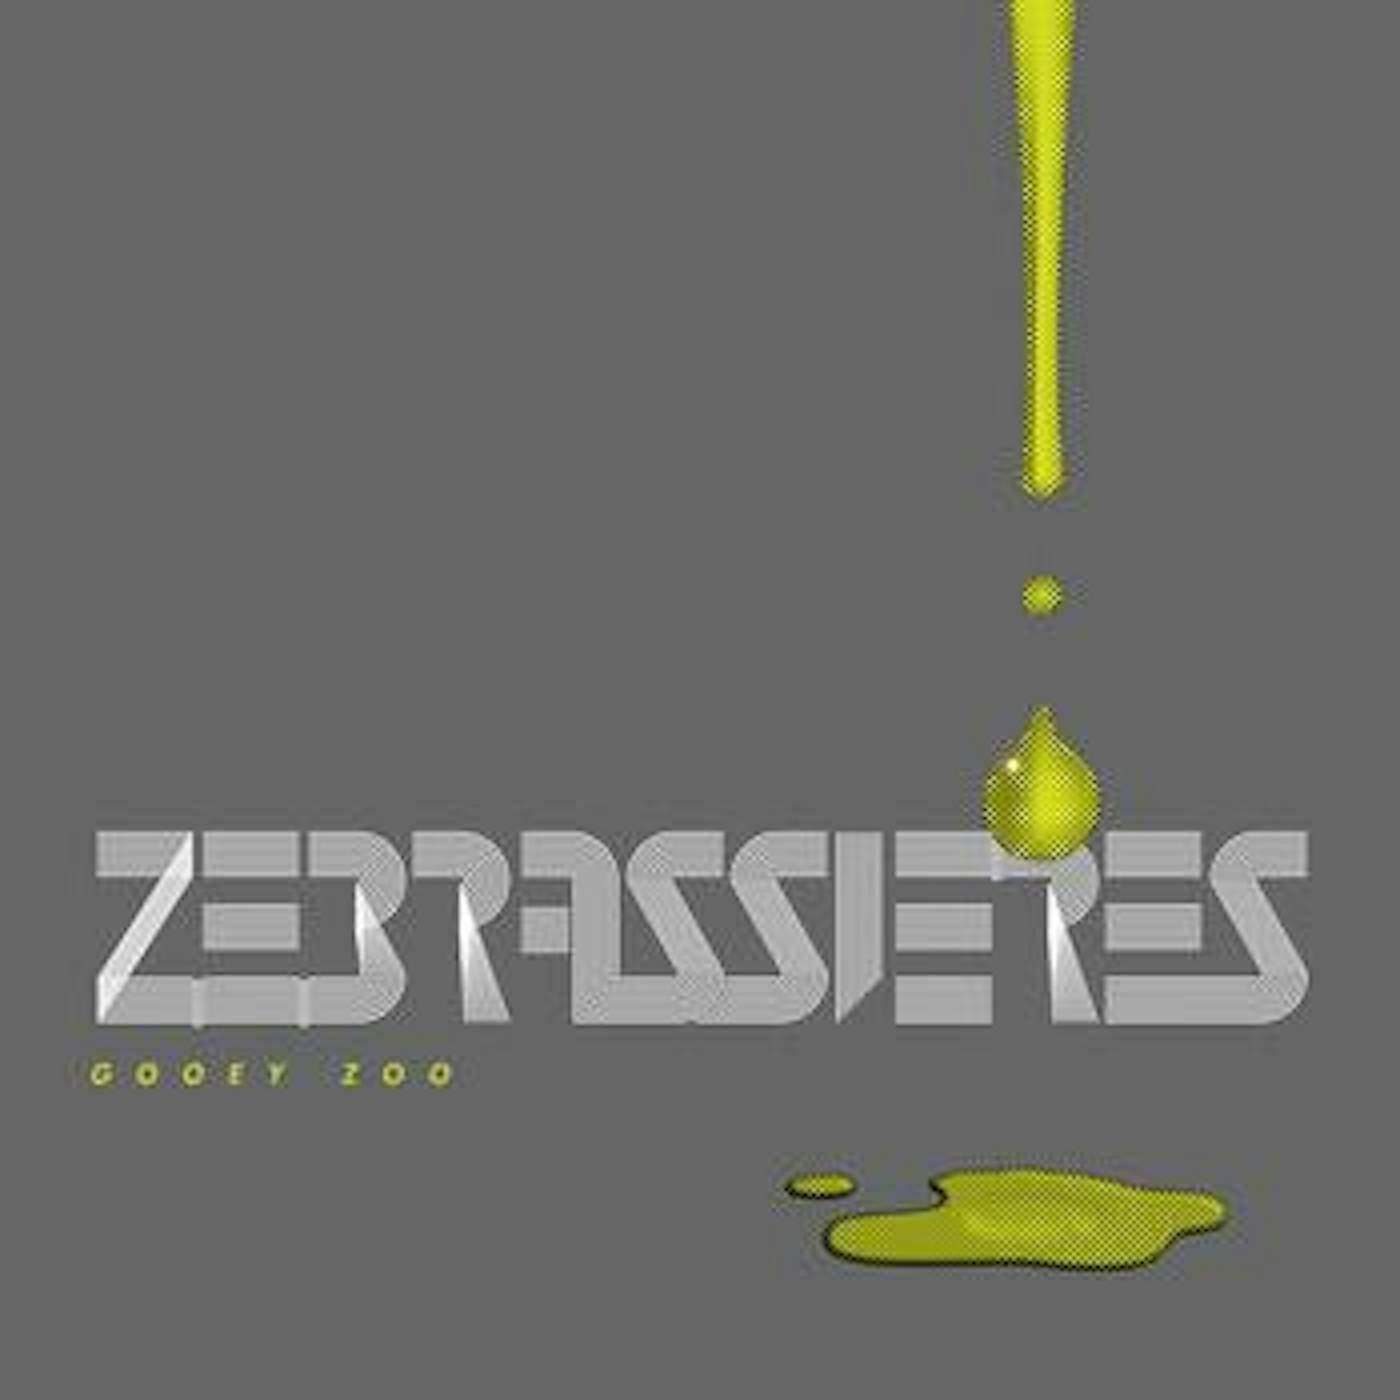 Zebrassieres – Gooey Zoo lp (Vinyl)